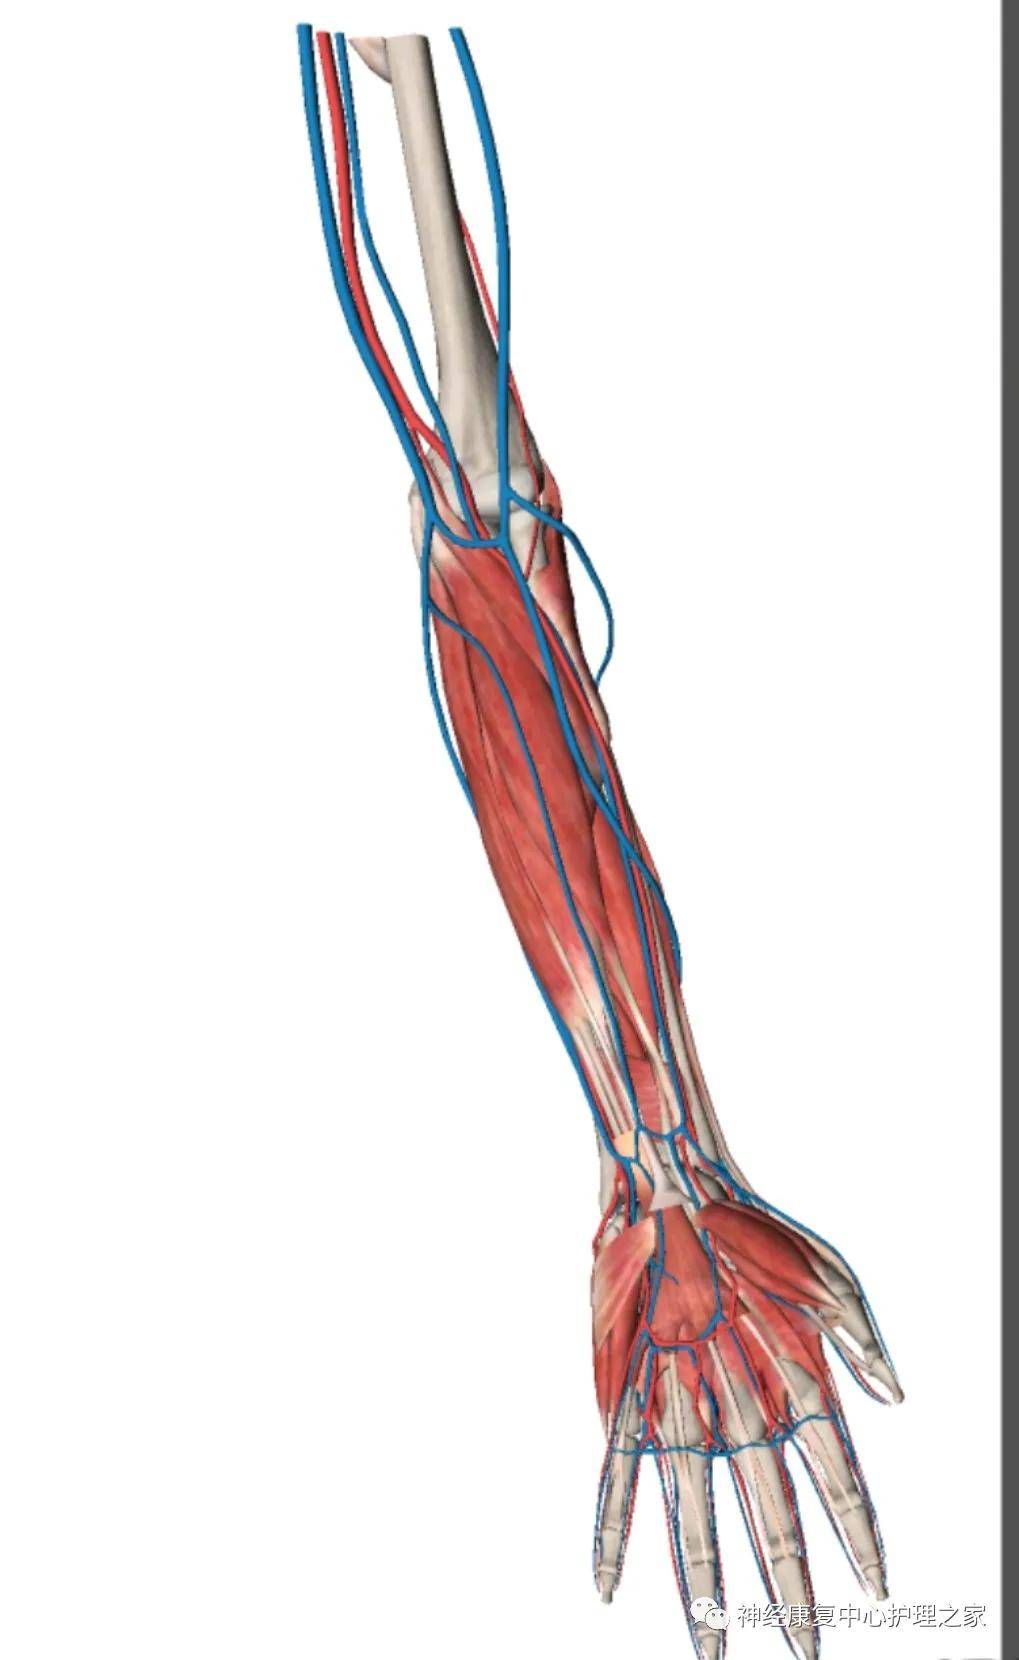 穿刺静脉应选上肢肘部可见,较粗大,充盈饱满,弹性好,较固定的不易滑动